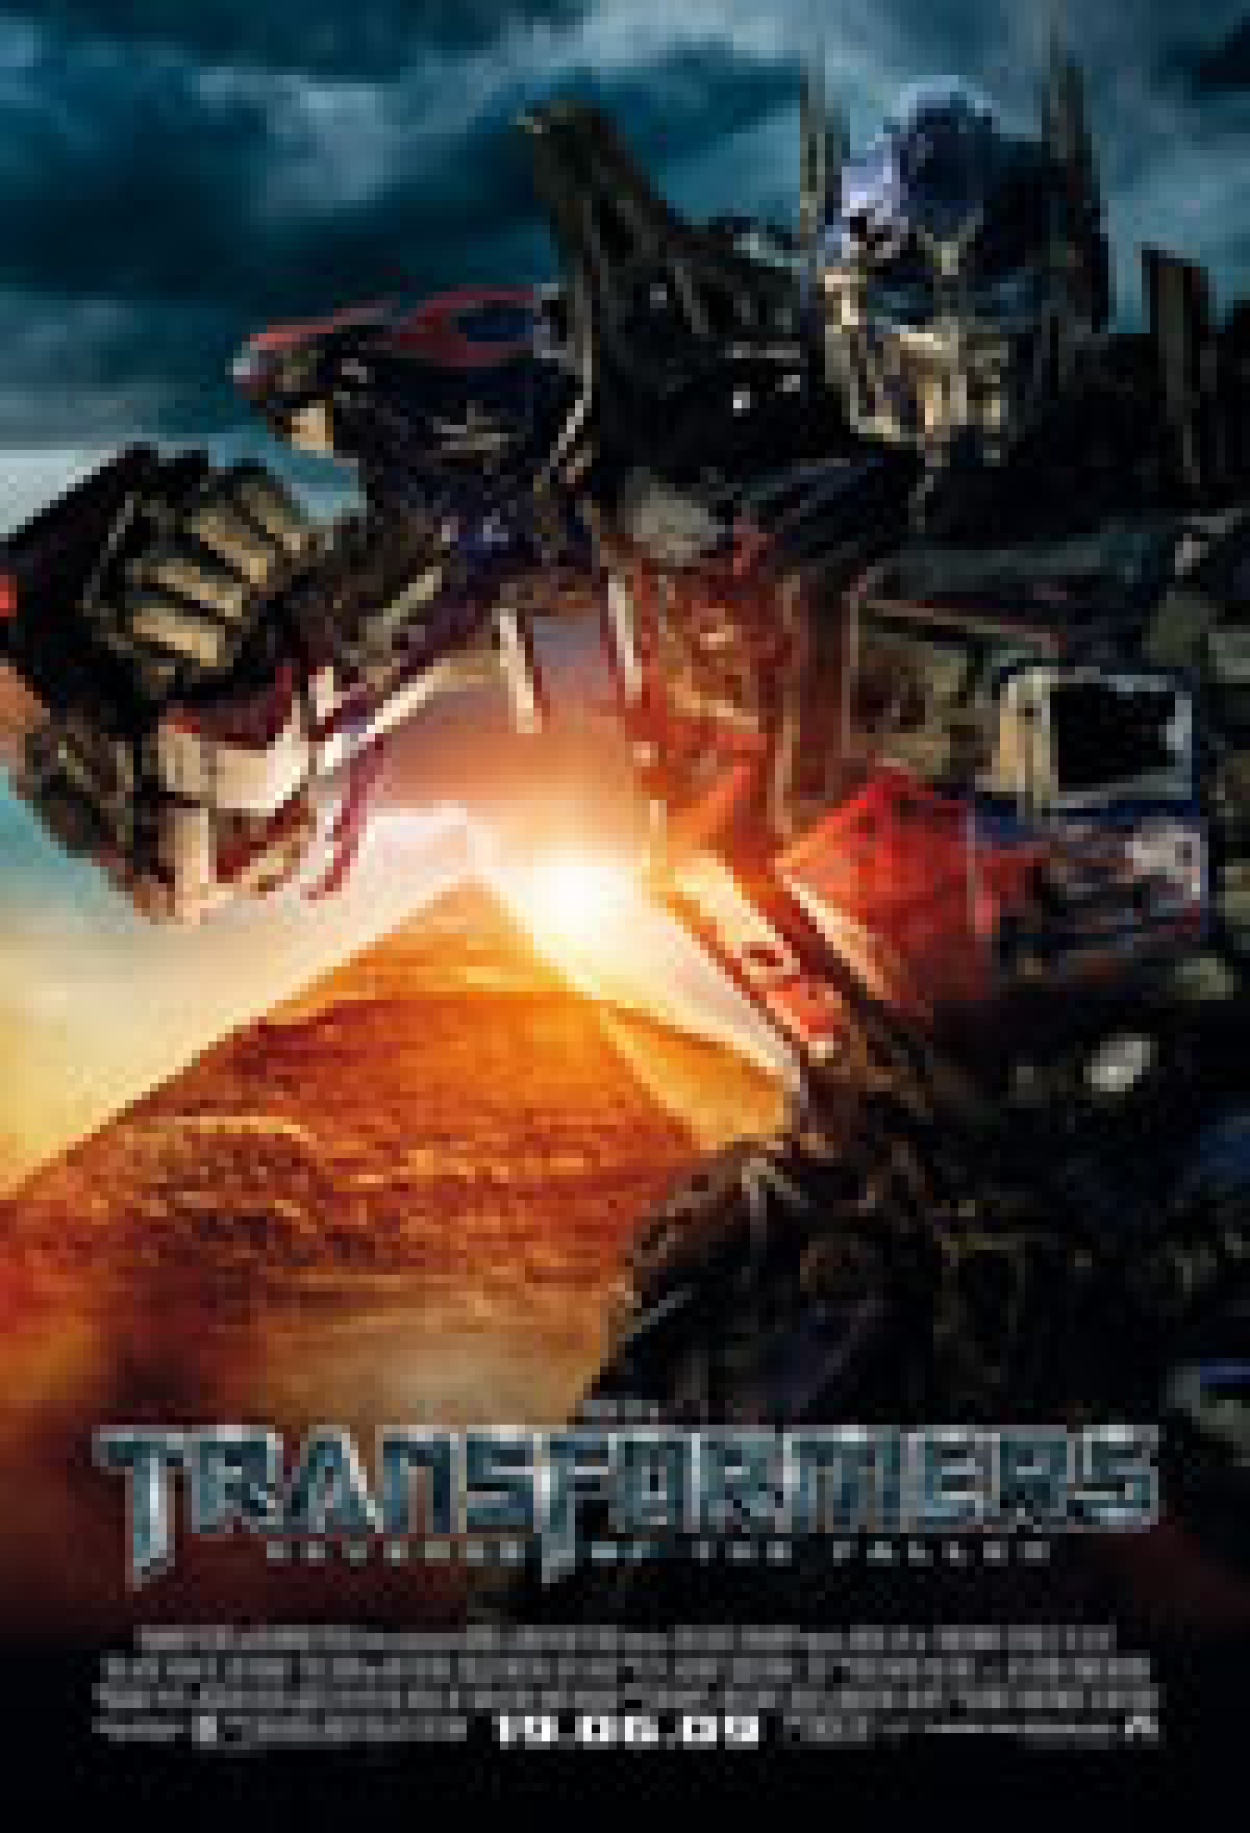 Transformers 2 é o pior filme de 2009, segundo pesquisa – Vírgula